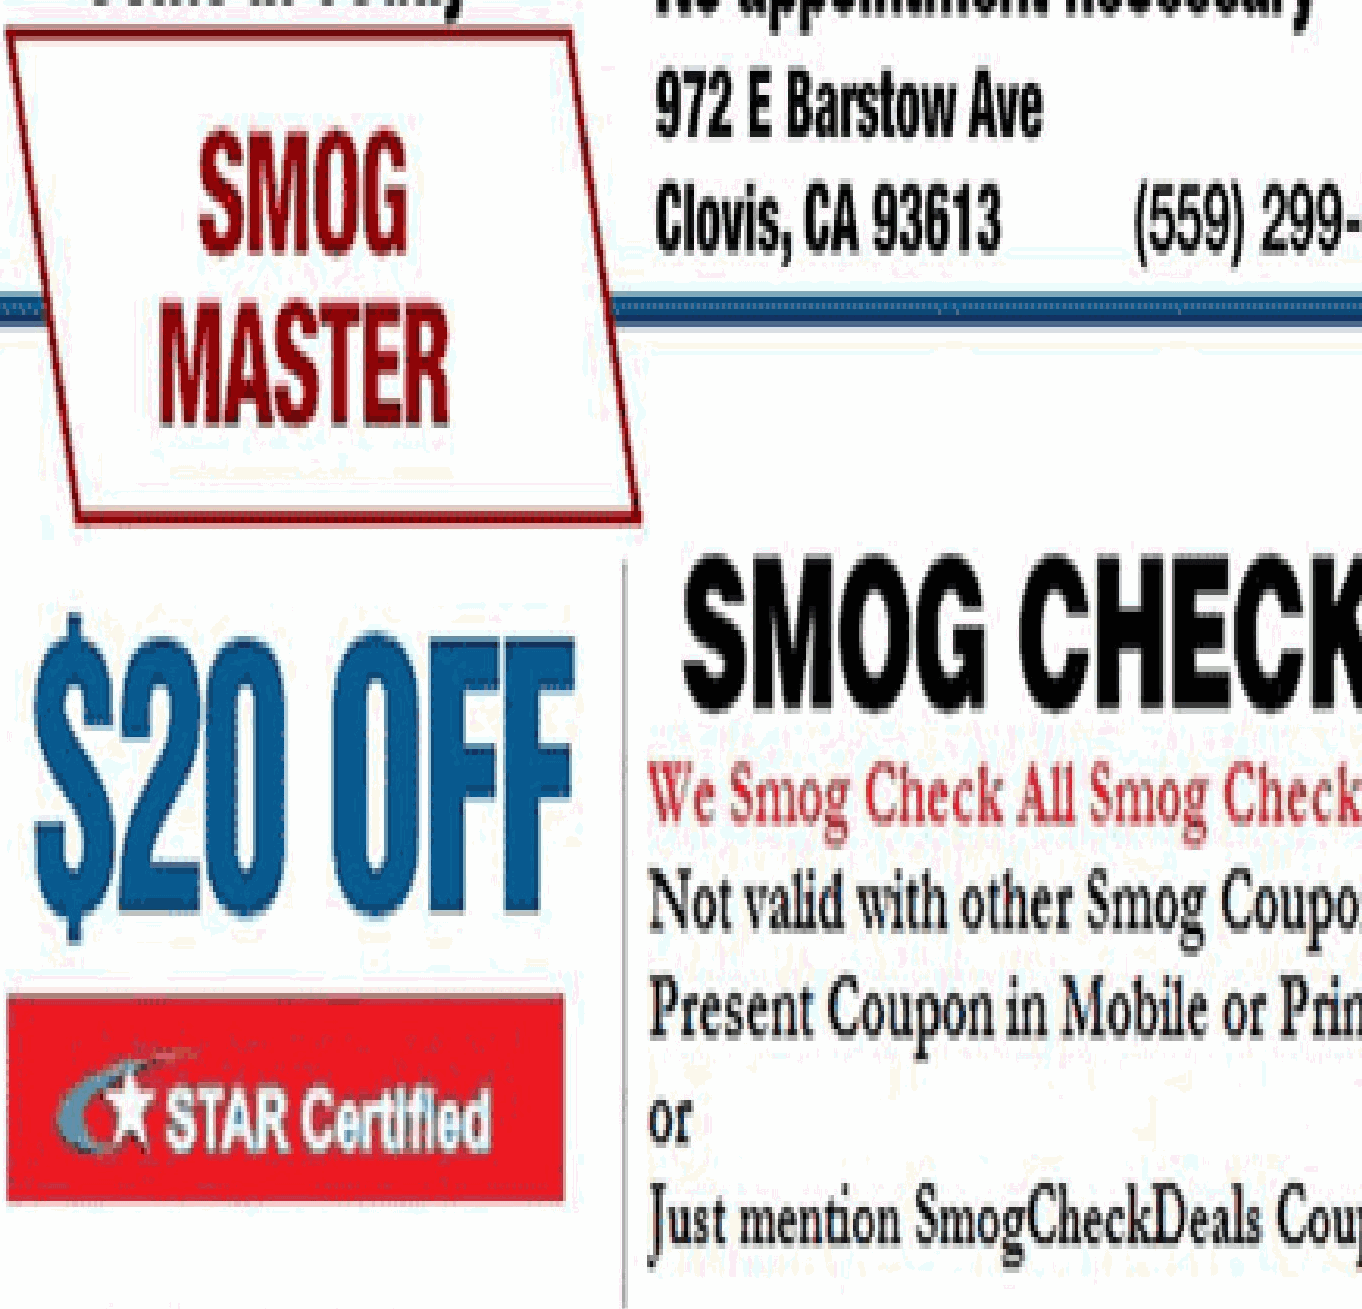 Clovis-Smog-Check-coupon